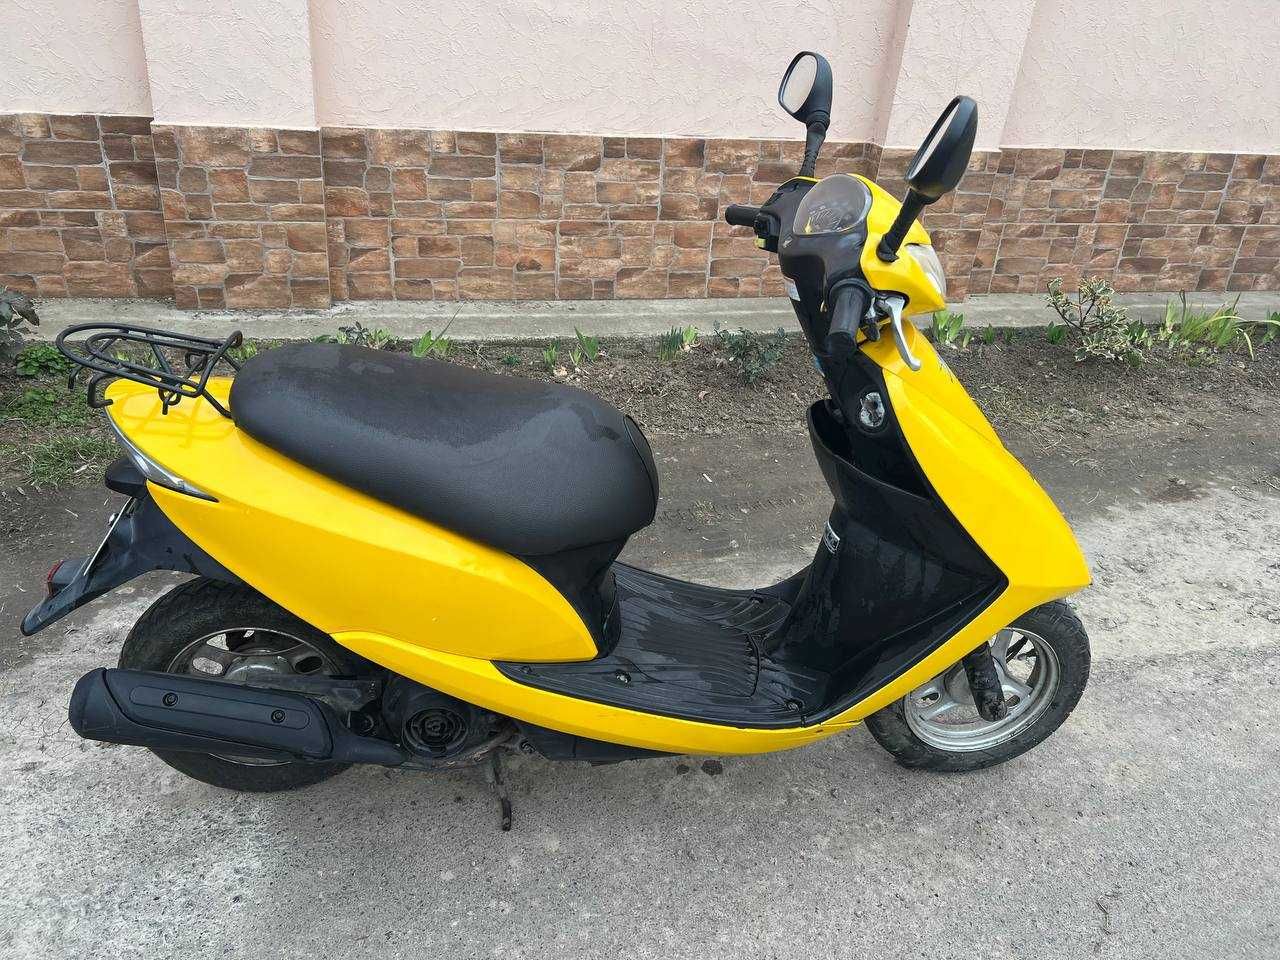 мопед Honda dio 68 бу жовтий колір, скутер хонда